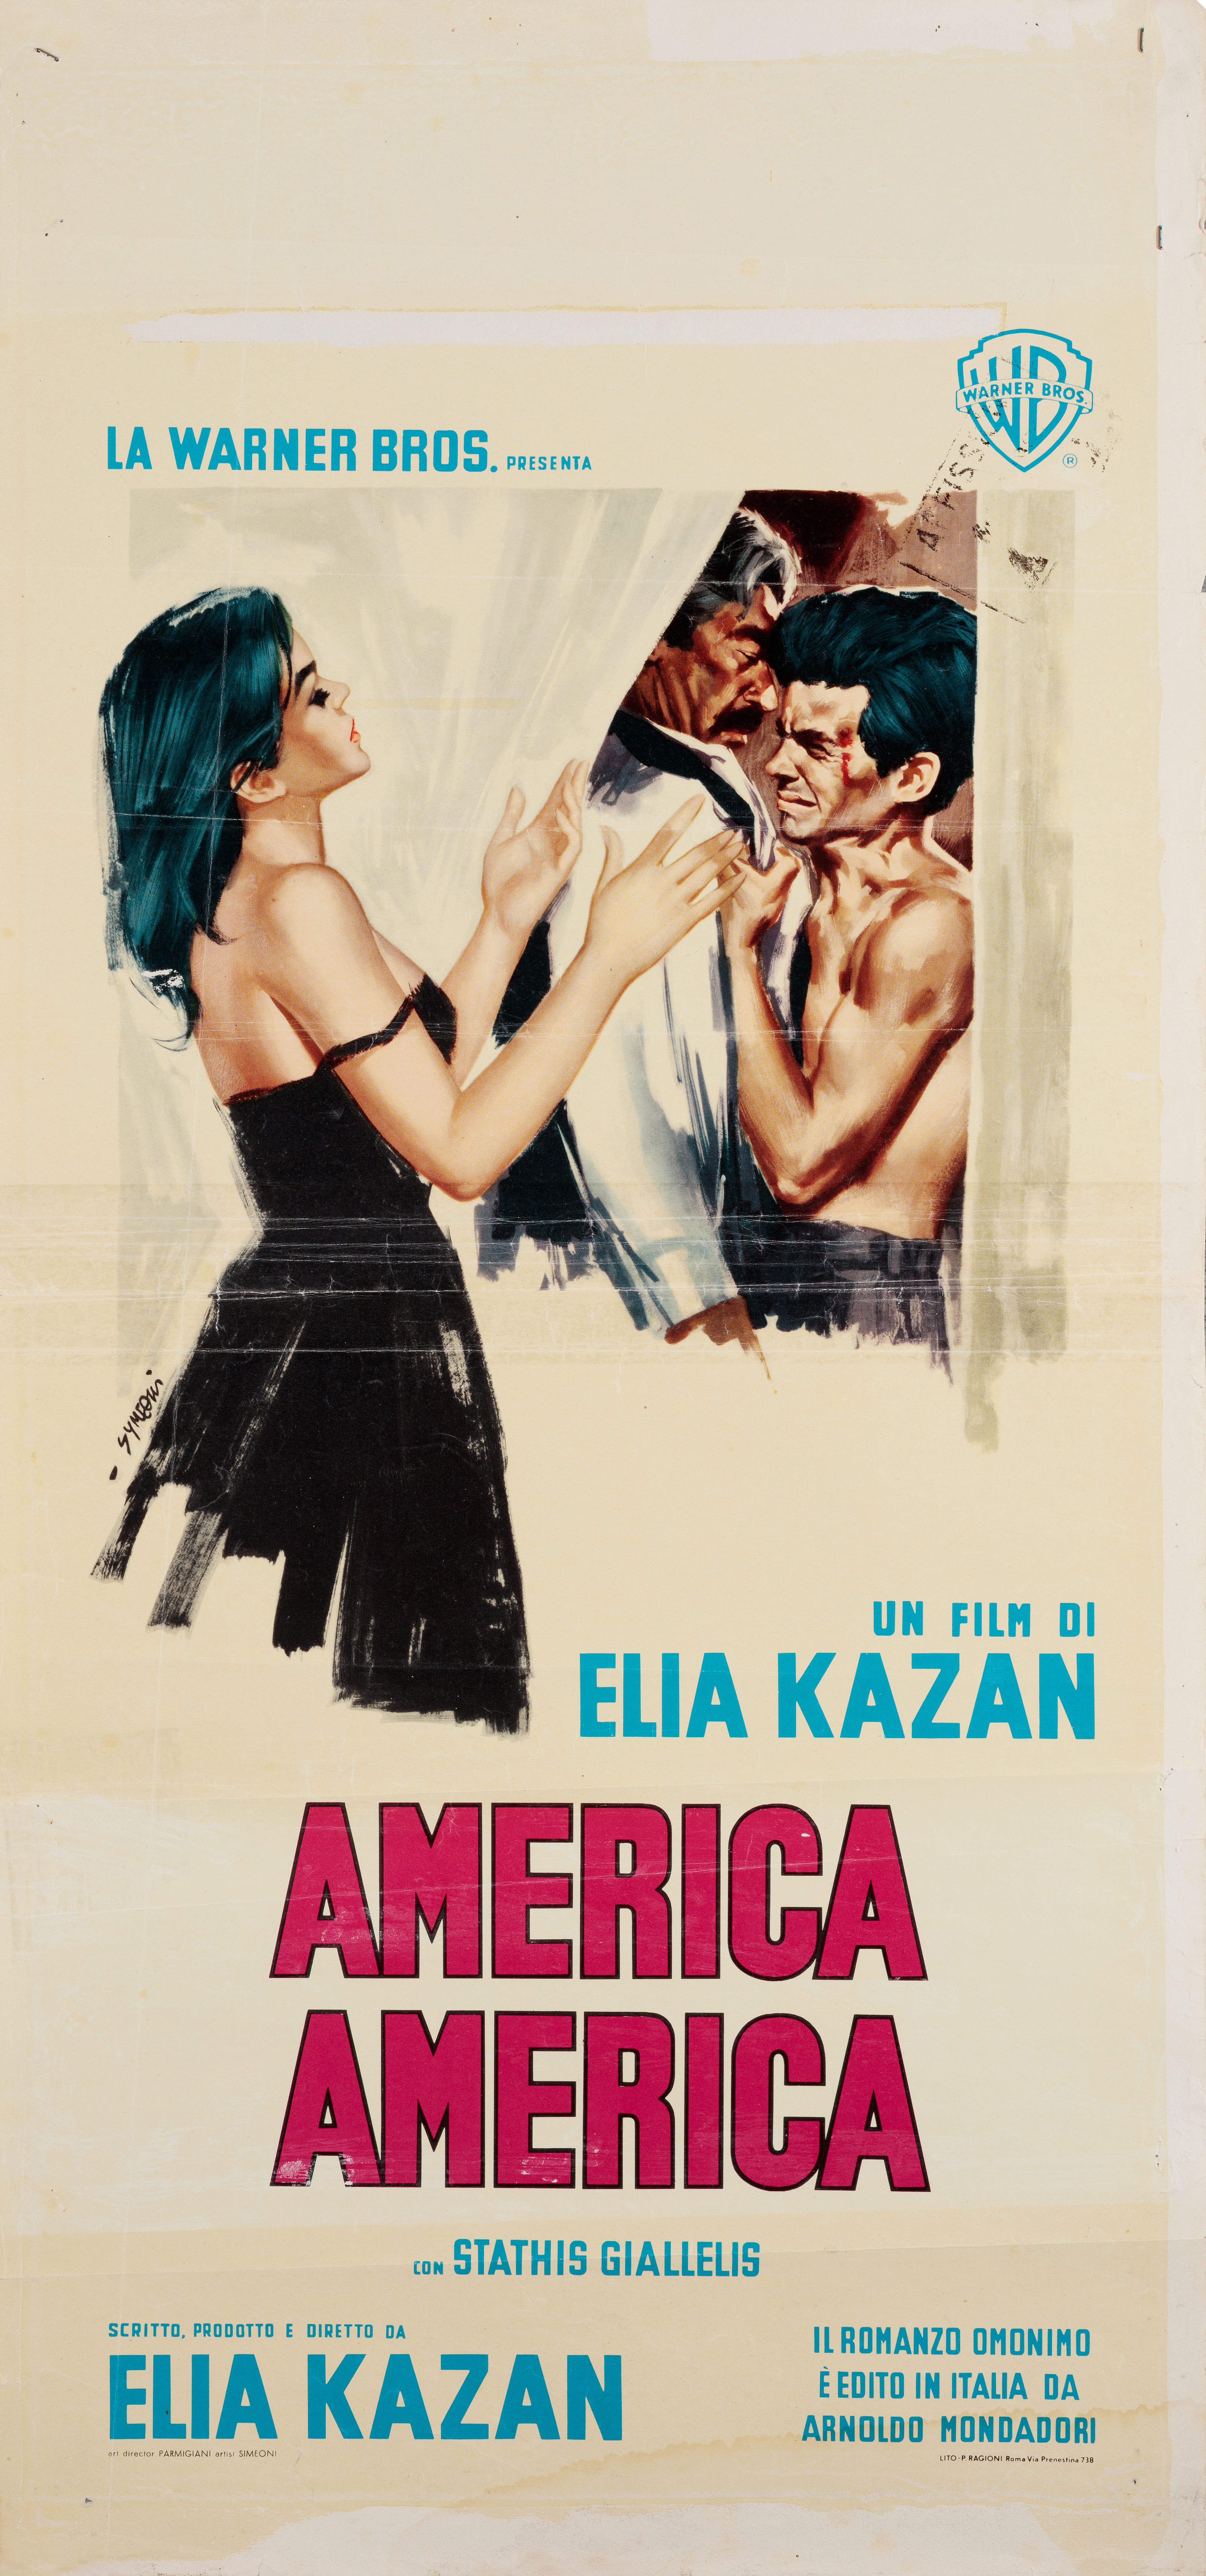 Америка, Америка (America, America, 1963), режиссёр Элия Казан, художественный постер к фильму (Италия, 1964 год), автор Сандро Симеони